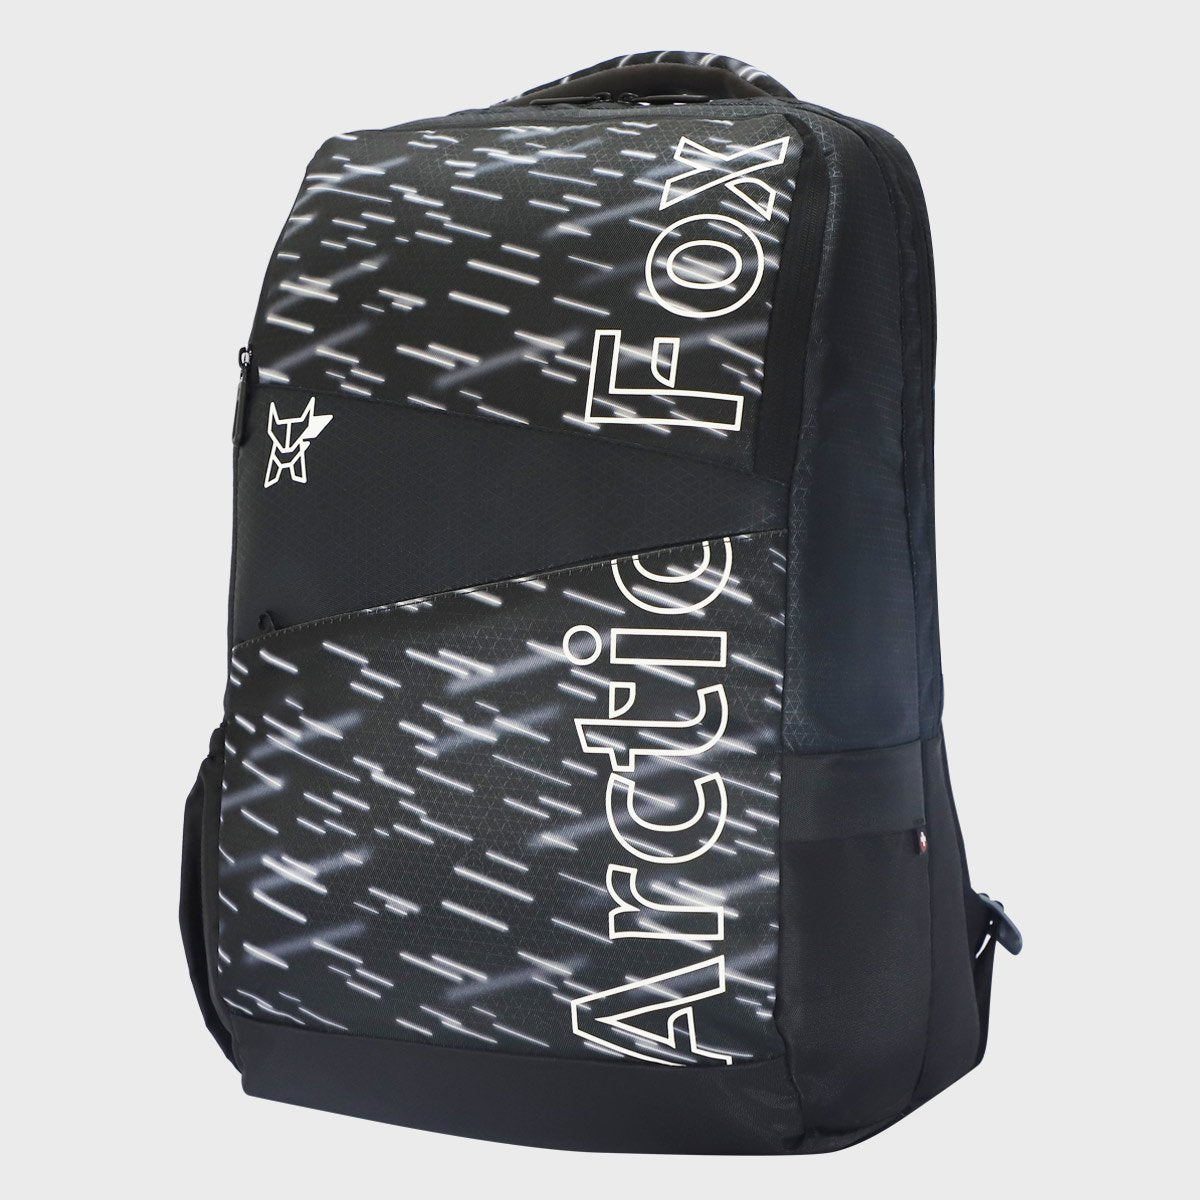 Arctic Fox Meteorite Jet Black School Bag , Hiking Travel Backpack With Rain Jacket